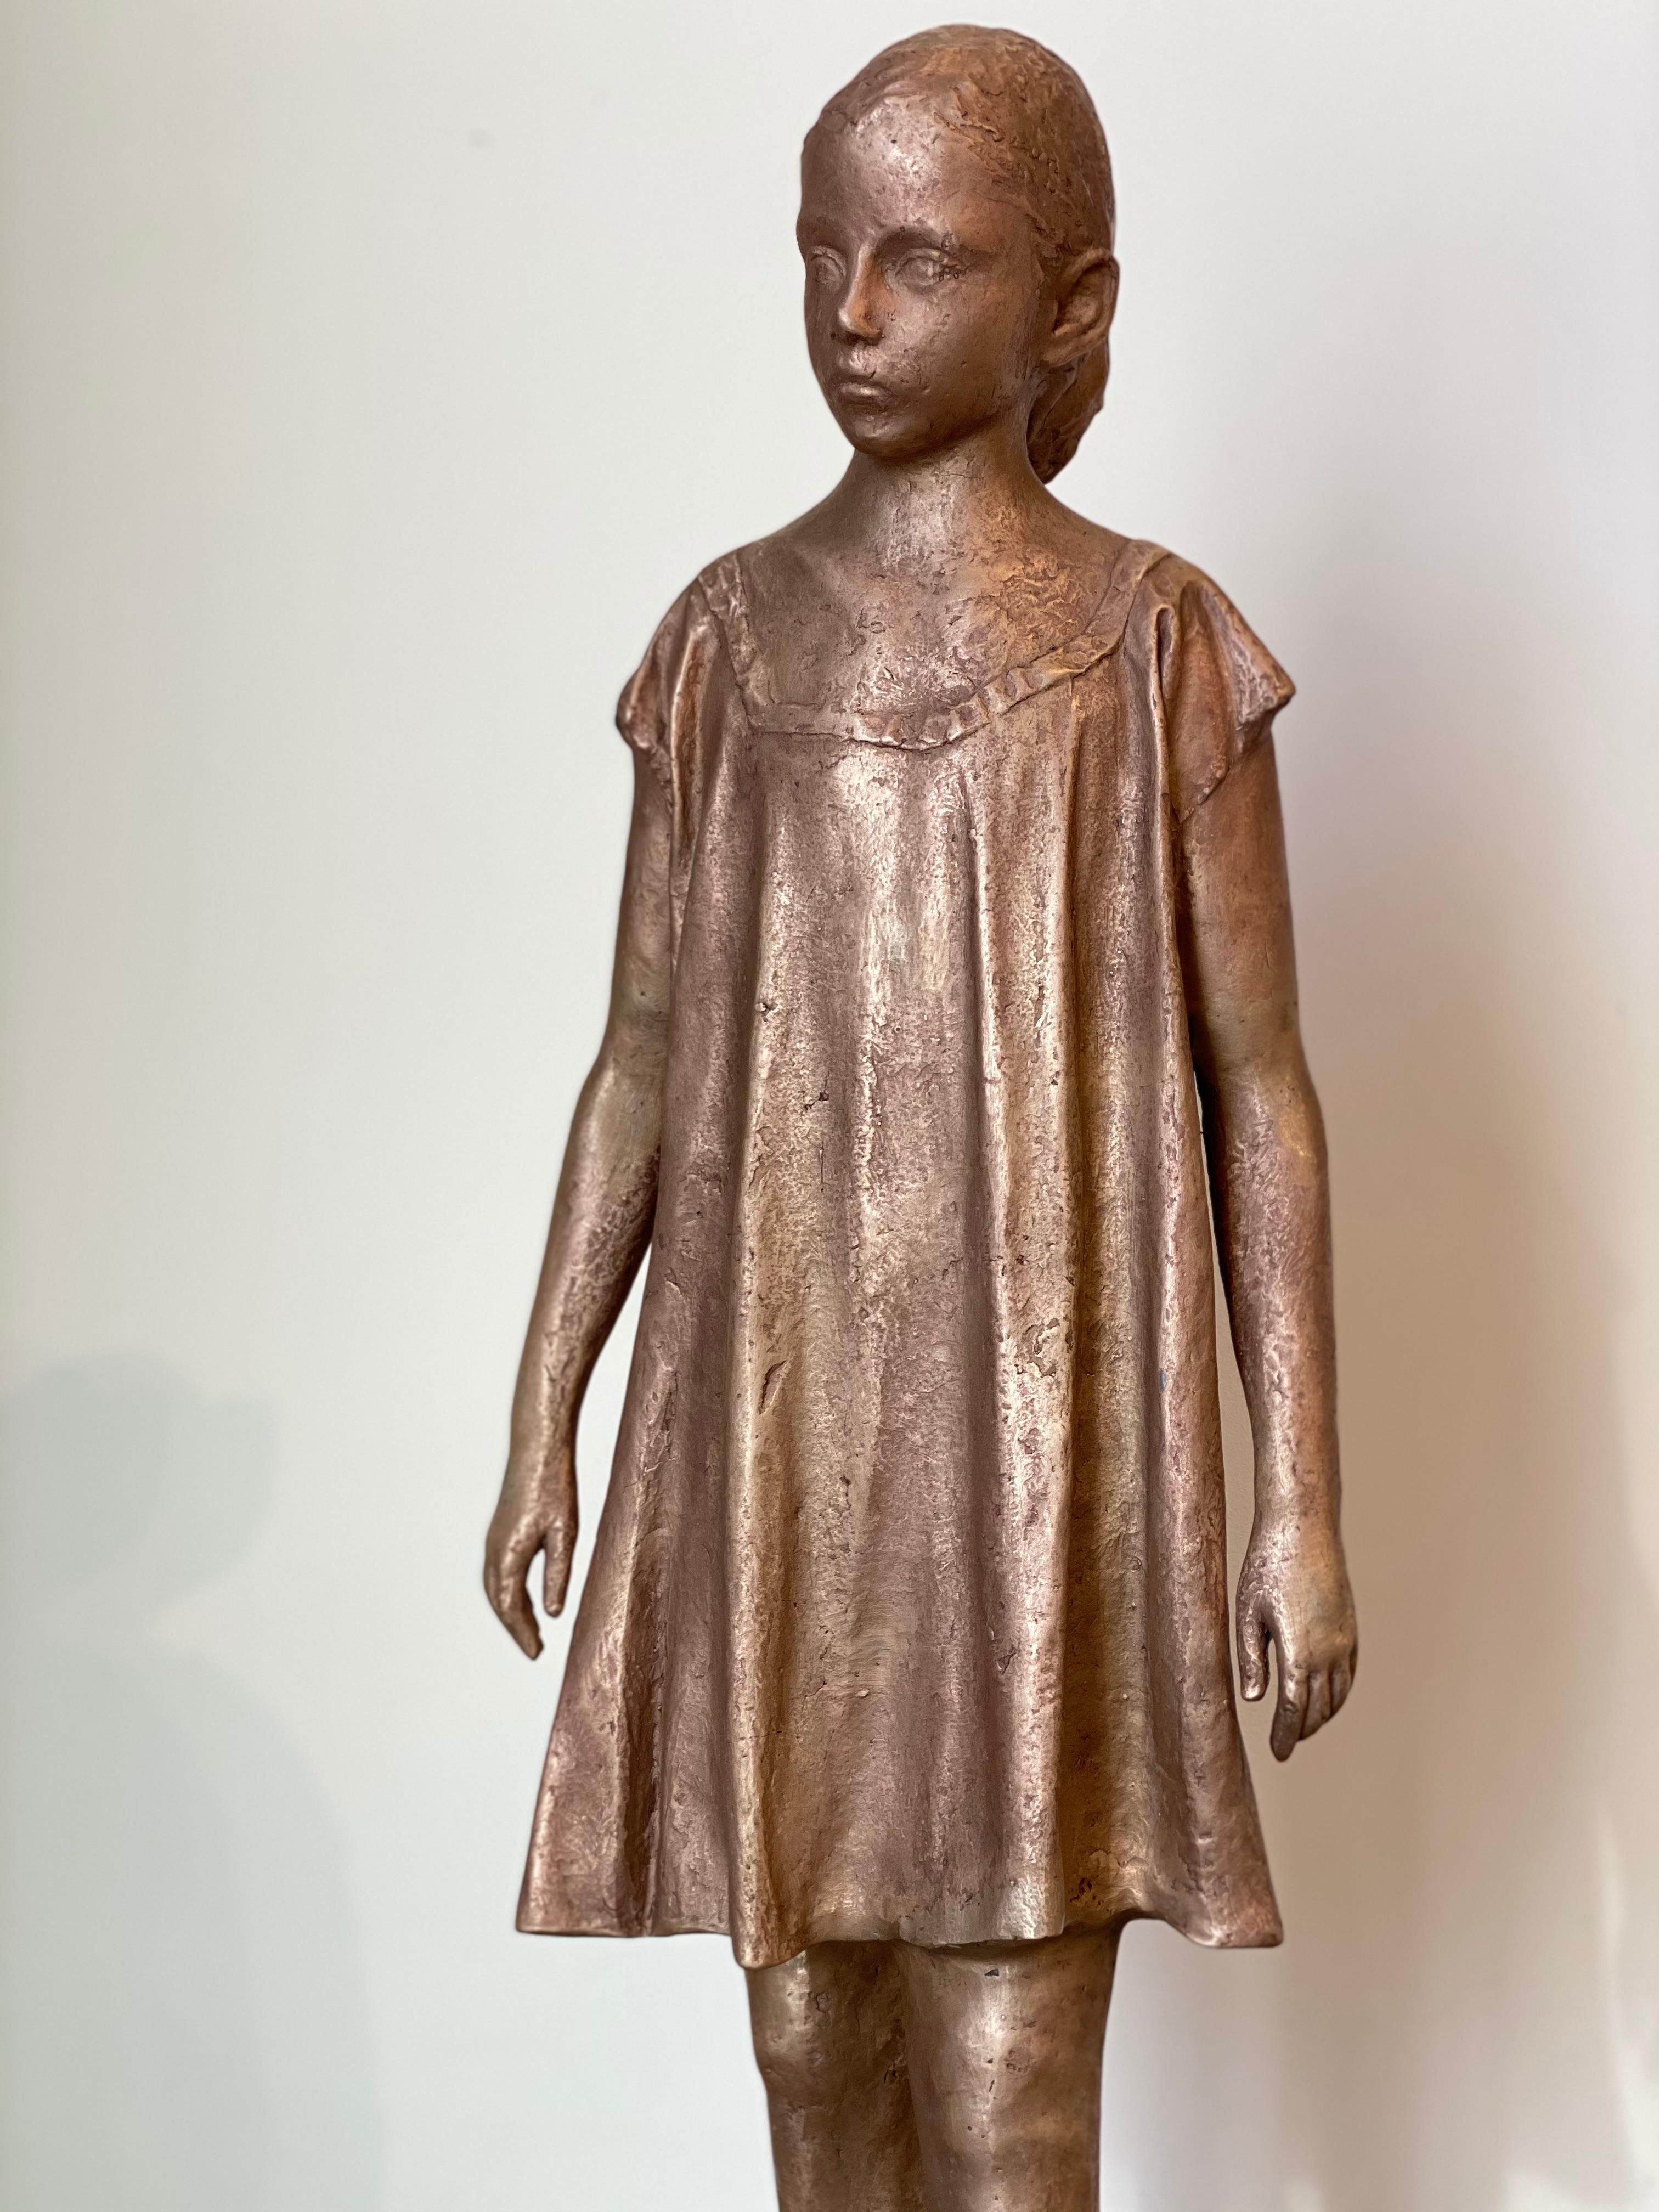 Cette sculpture en bronze est réalisée par l'artiste espagnol Pedro Quesada Sierra.   (2021)

Le sculpteur espagnol, malgré ses 39 ans seulement, est déjà beaucoup de lauréats. En mars 2018, il a reçu, des mains de la reine Sofia d'Espagne, le plus